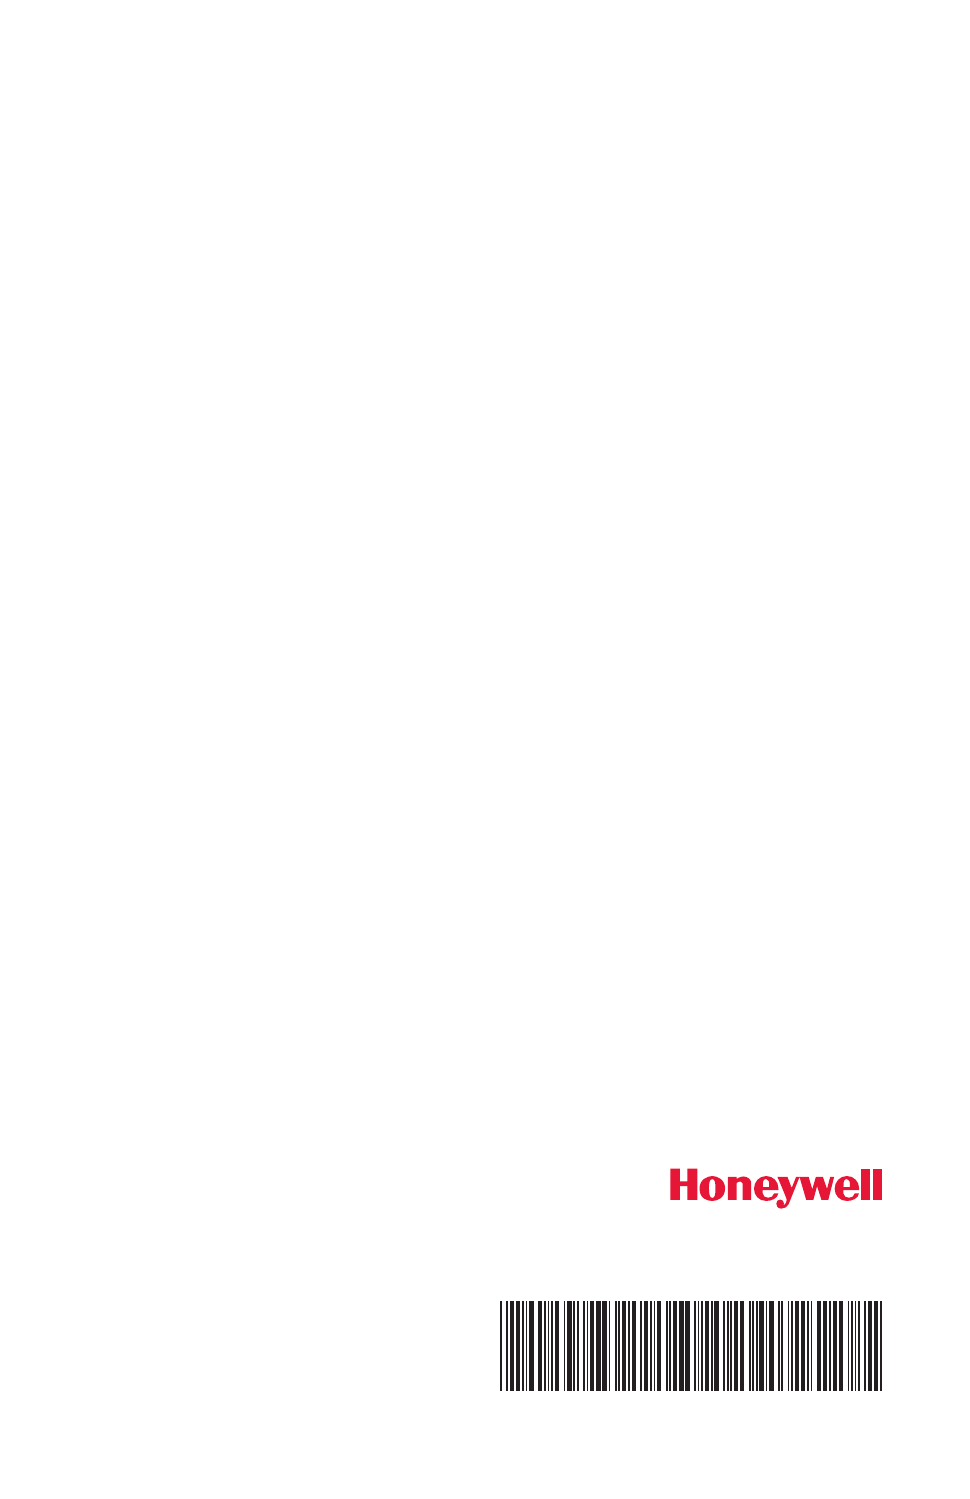 Honeywell Wv8840b1110 Manual Pdf Download